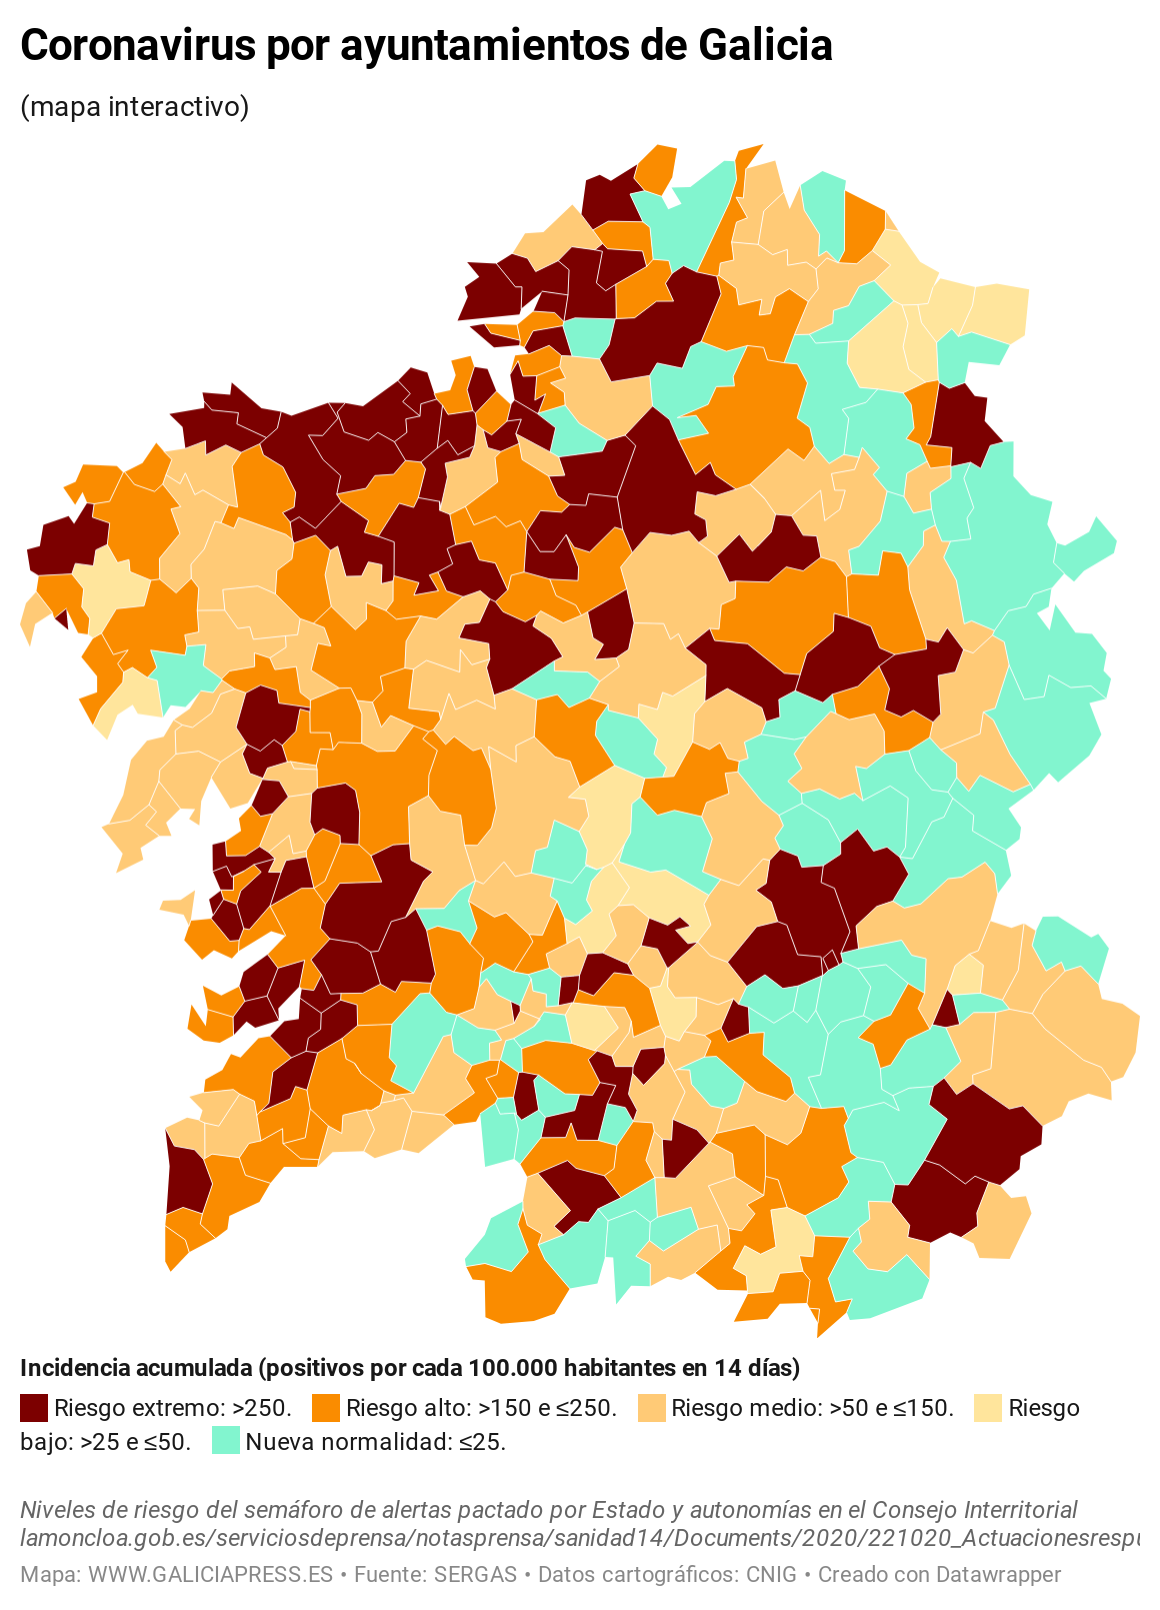 KV7EO coronavirus por concellos de galicia  (15)